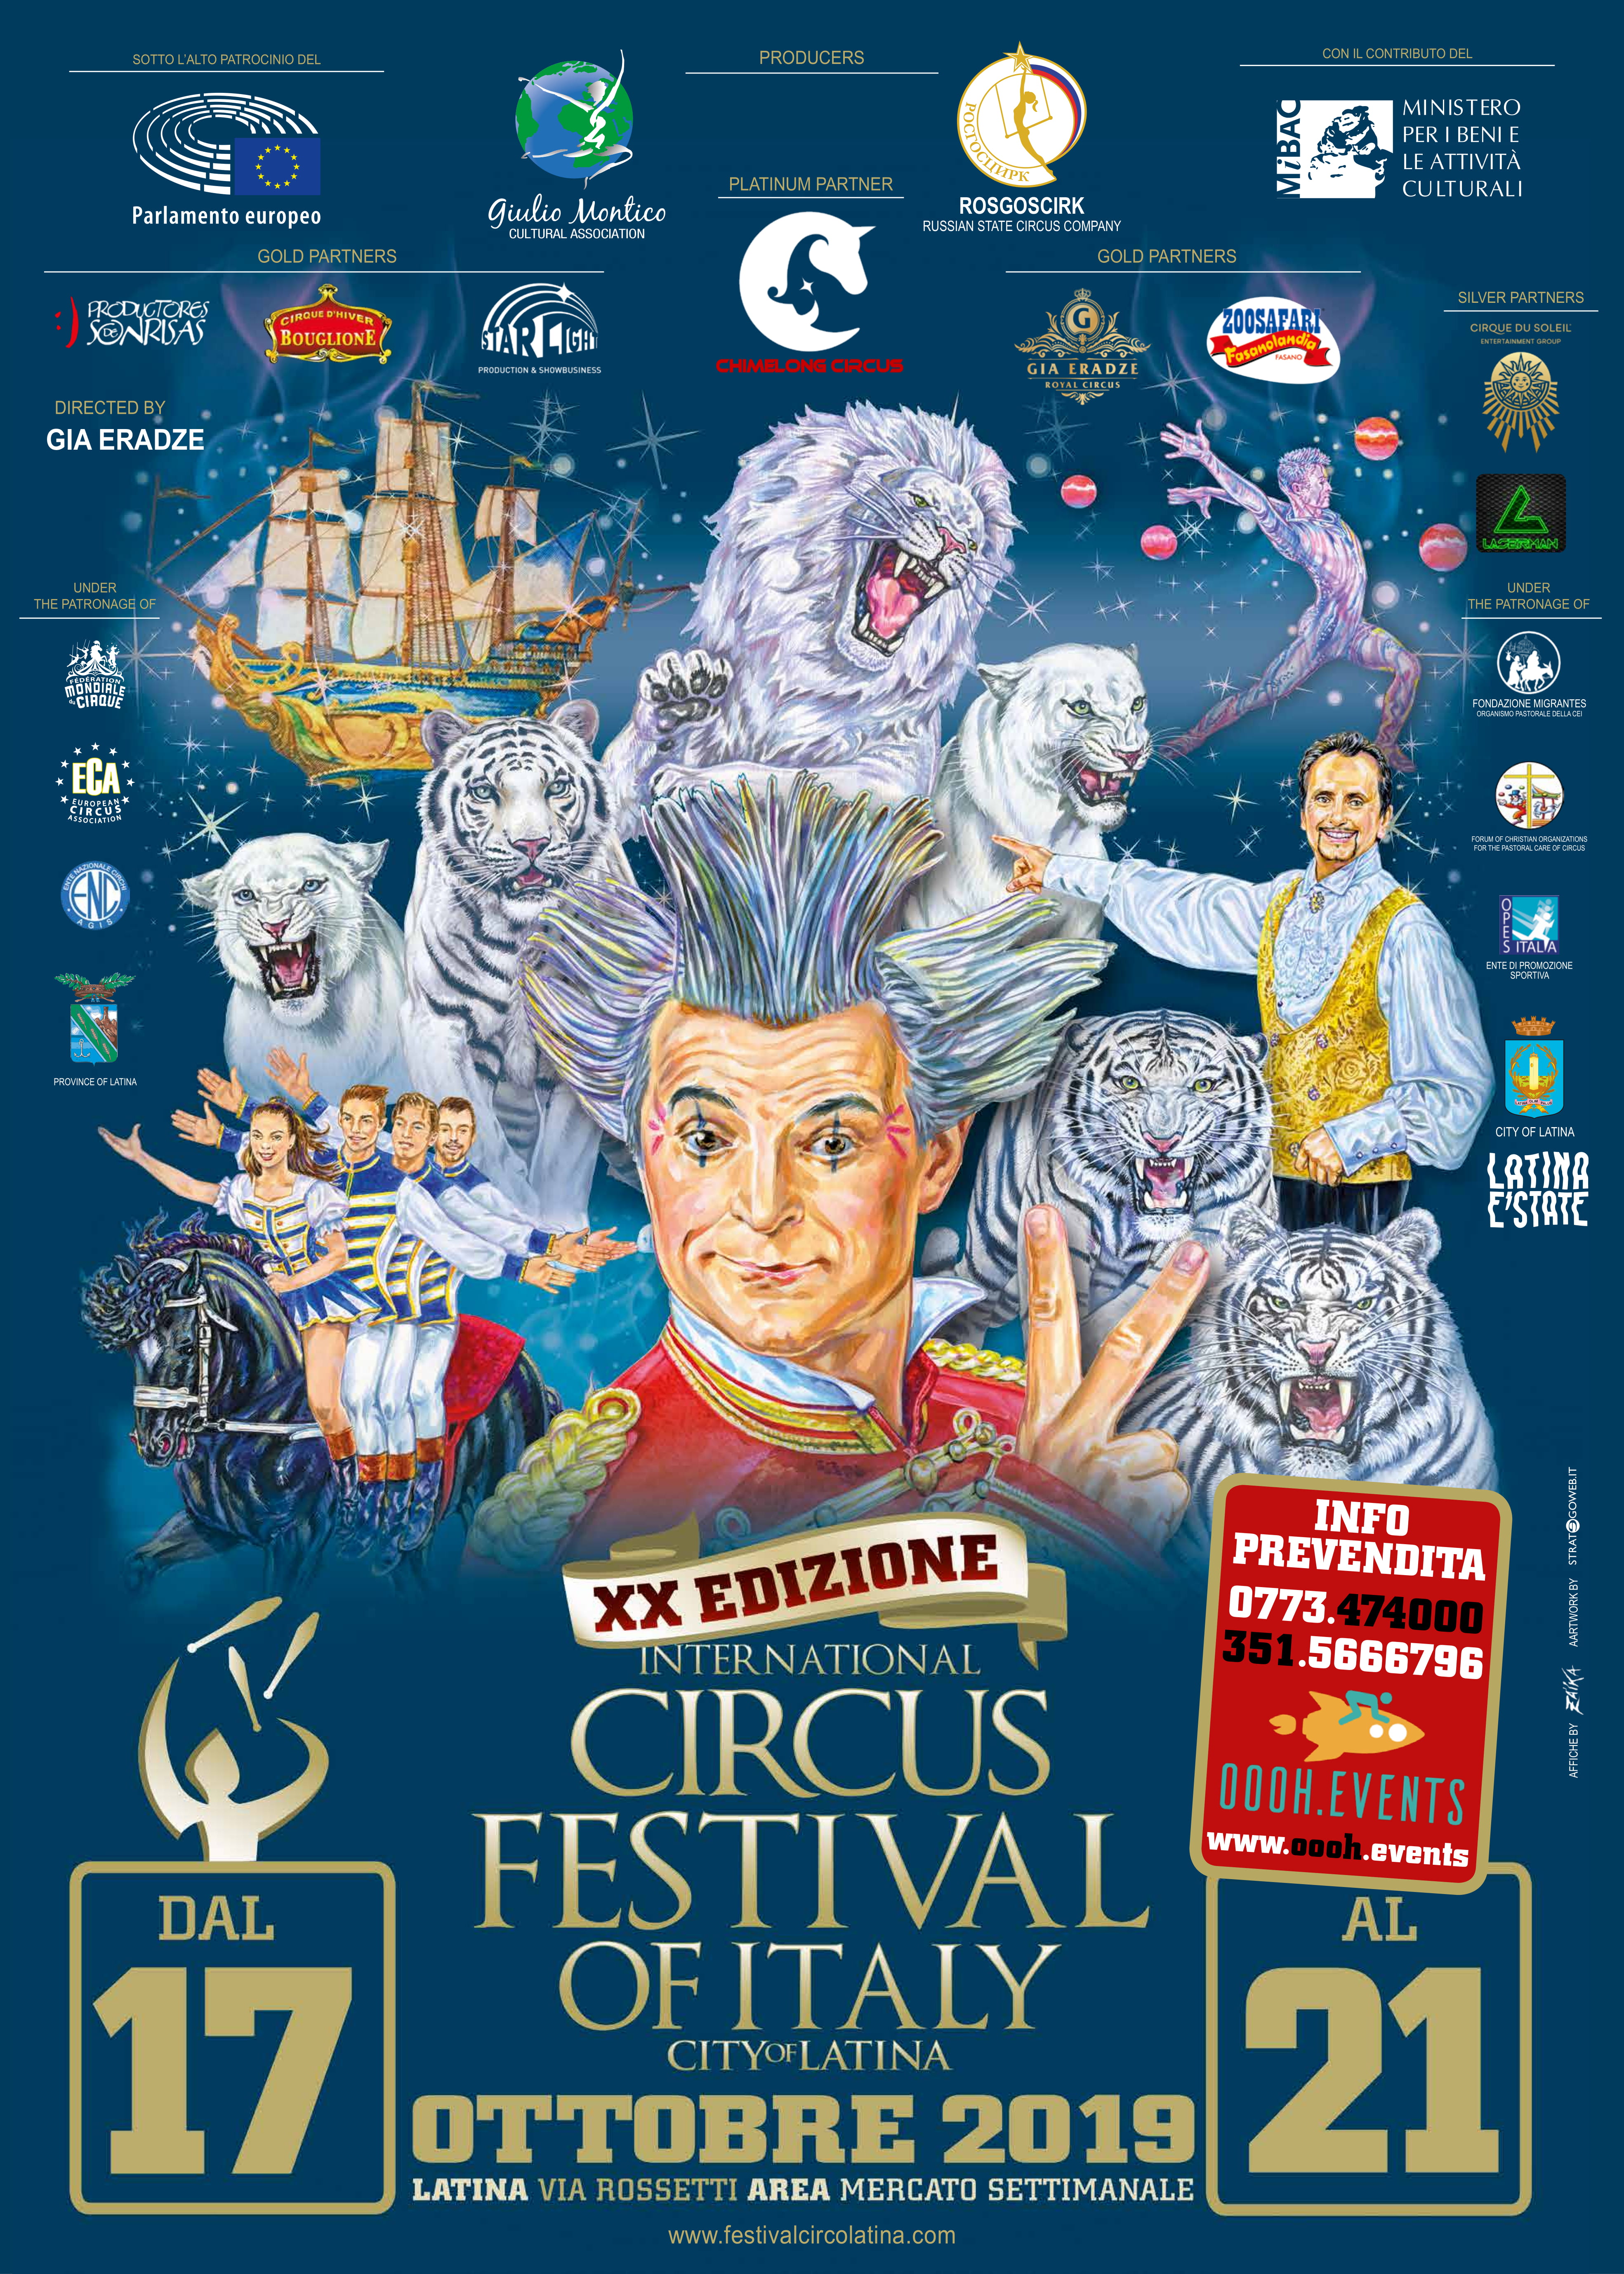 Al via la #20ª edizione dell’International Circus Festival of Italy